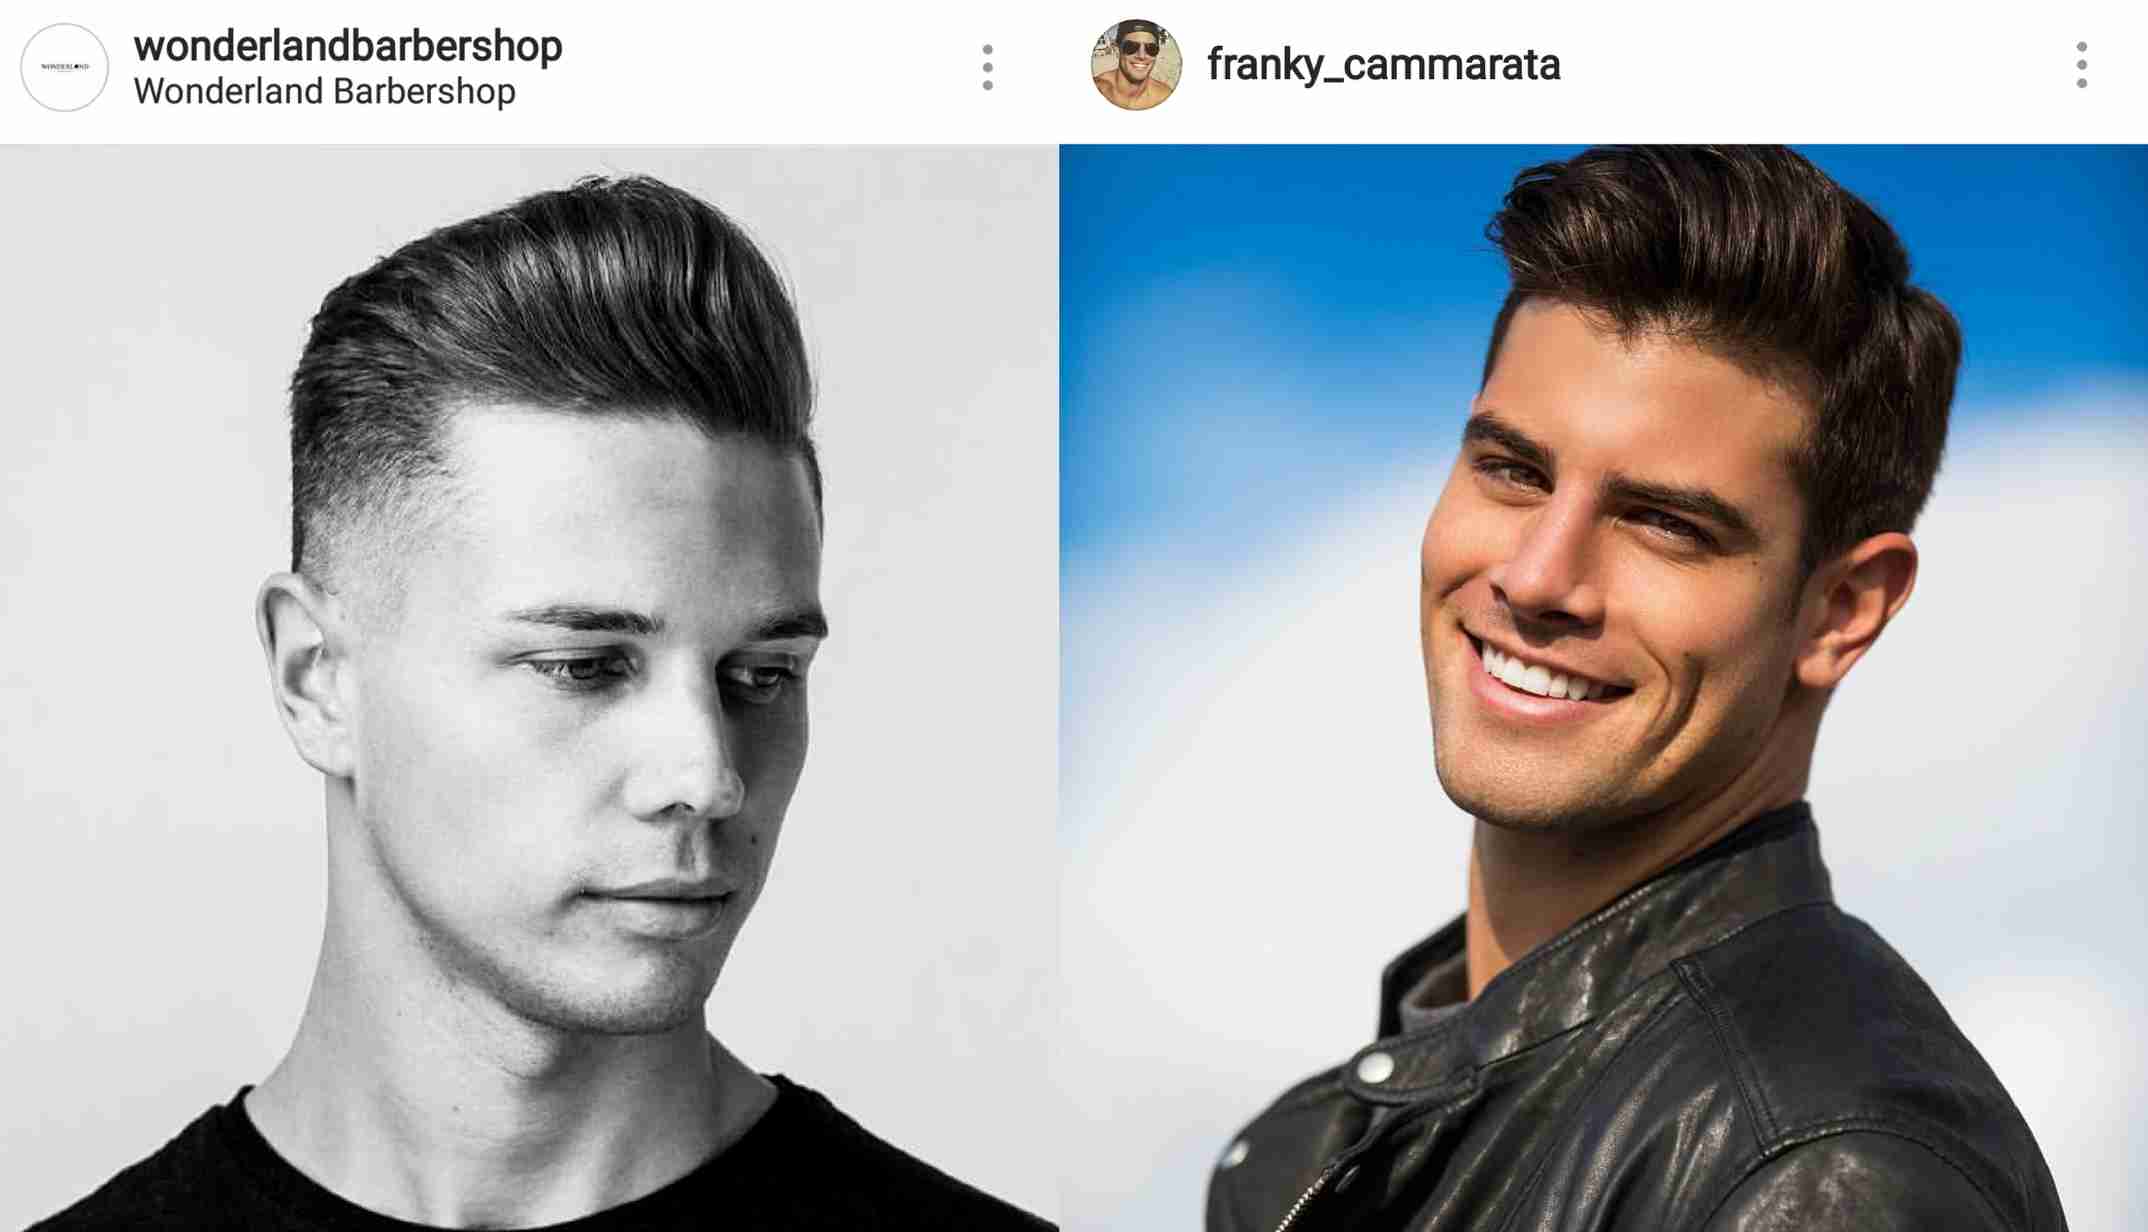 Homem No Espelho - Cortes de cabelo 2018: as tendências do Instagram